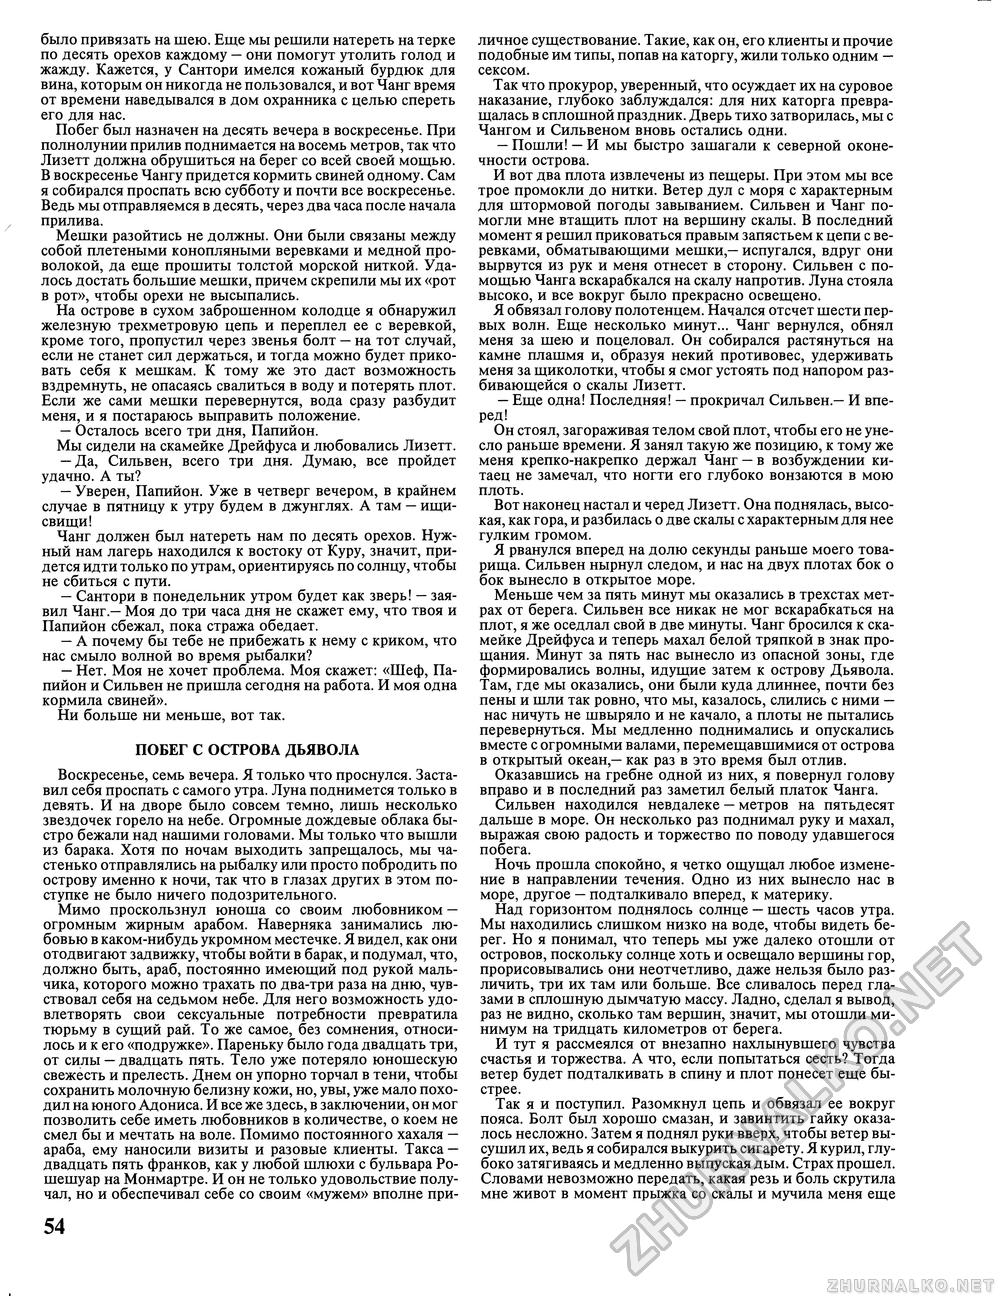 Вокруг света 1992-11, страница 56